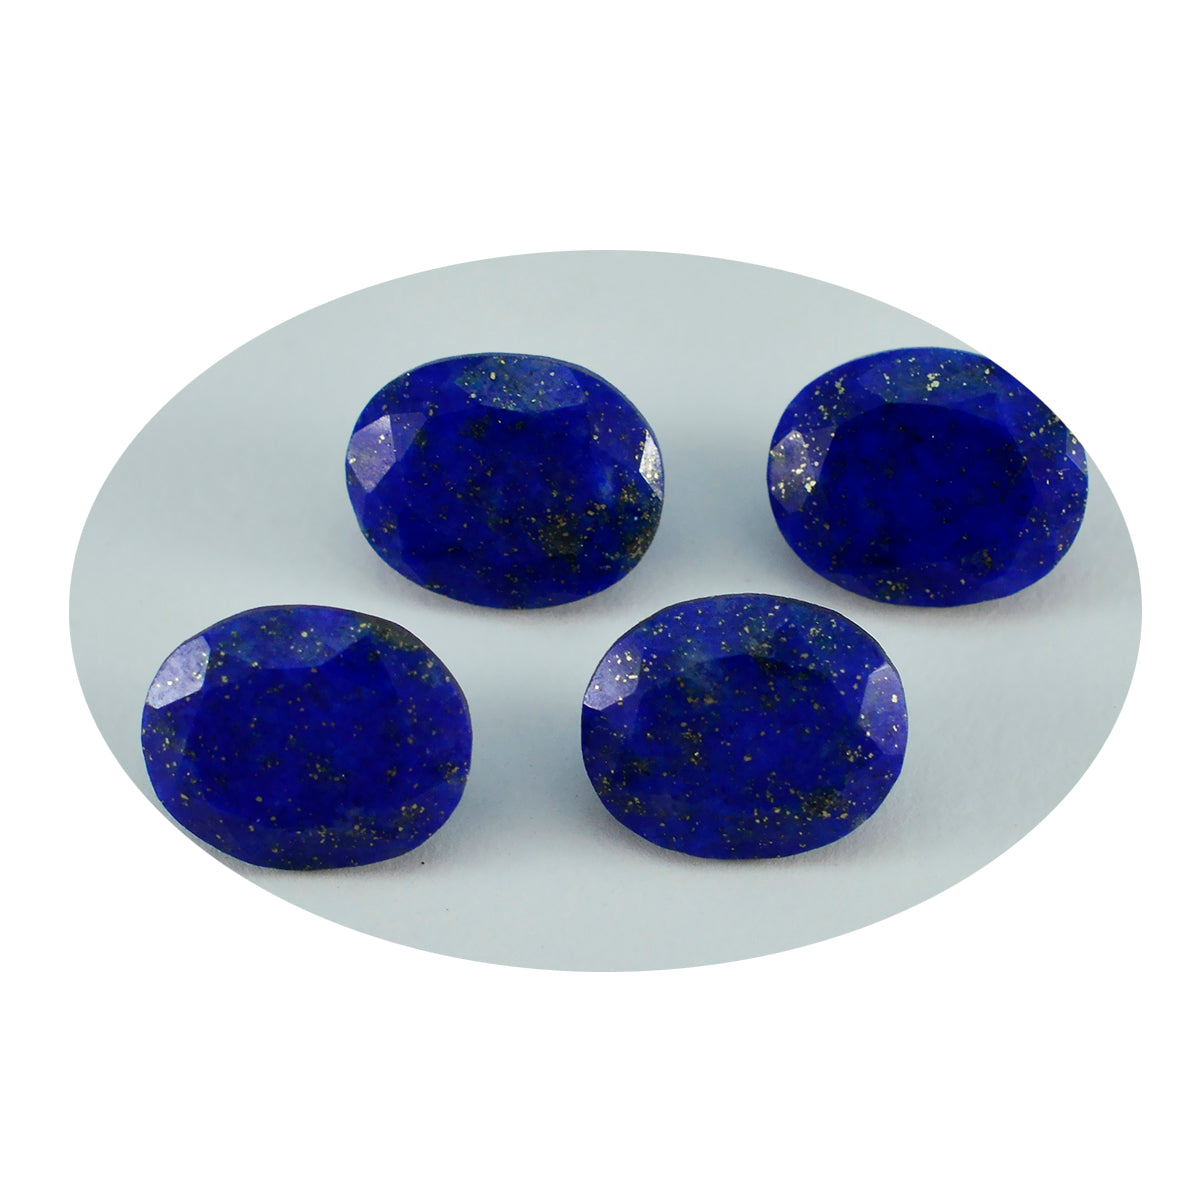 Riyogems 1 Stück echter blauer Lapislazuli, facettiert, 10 x 12 mm, ovale Form, erstaunlich hochwertiger loser Stein